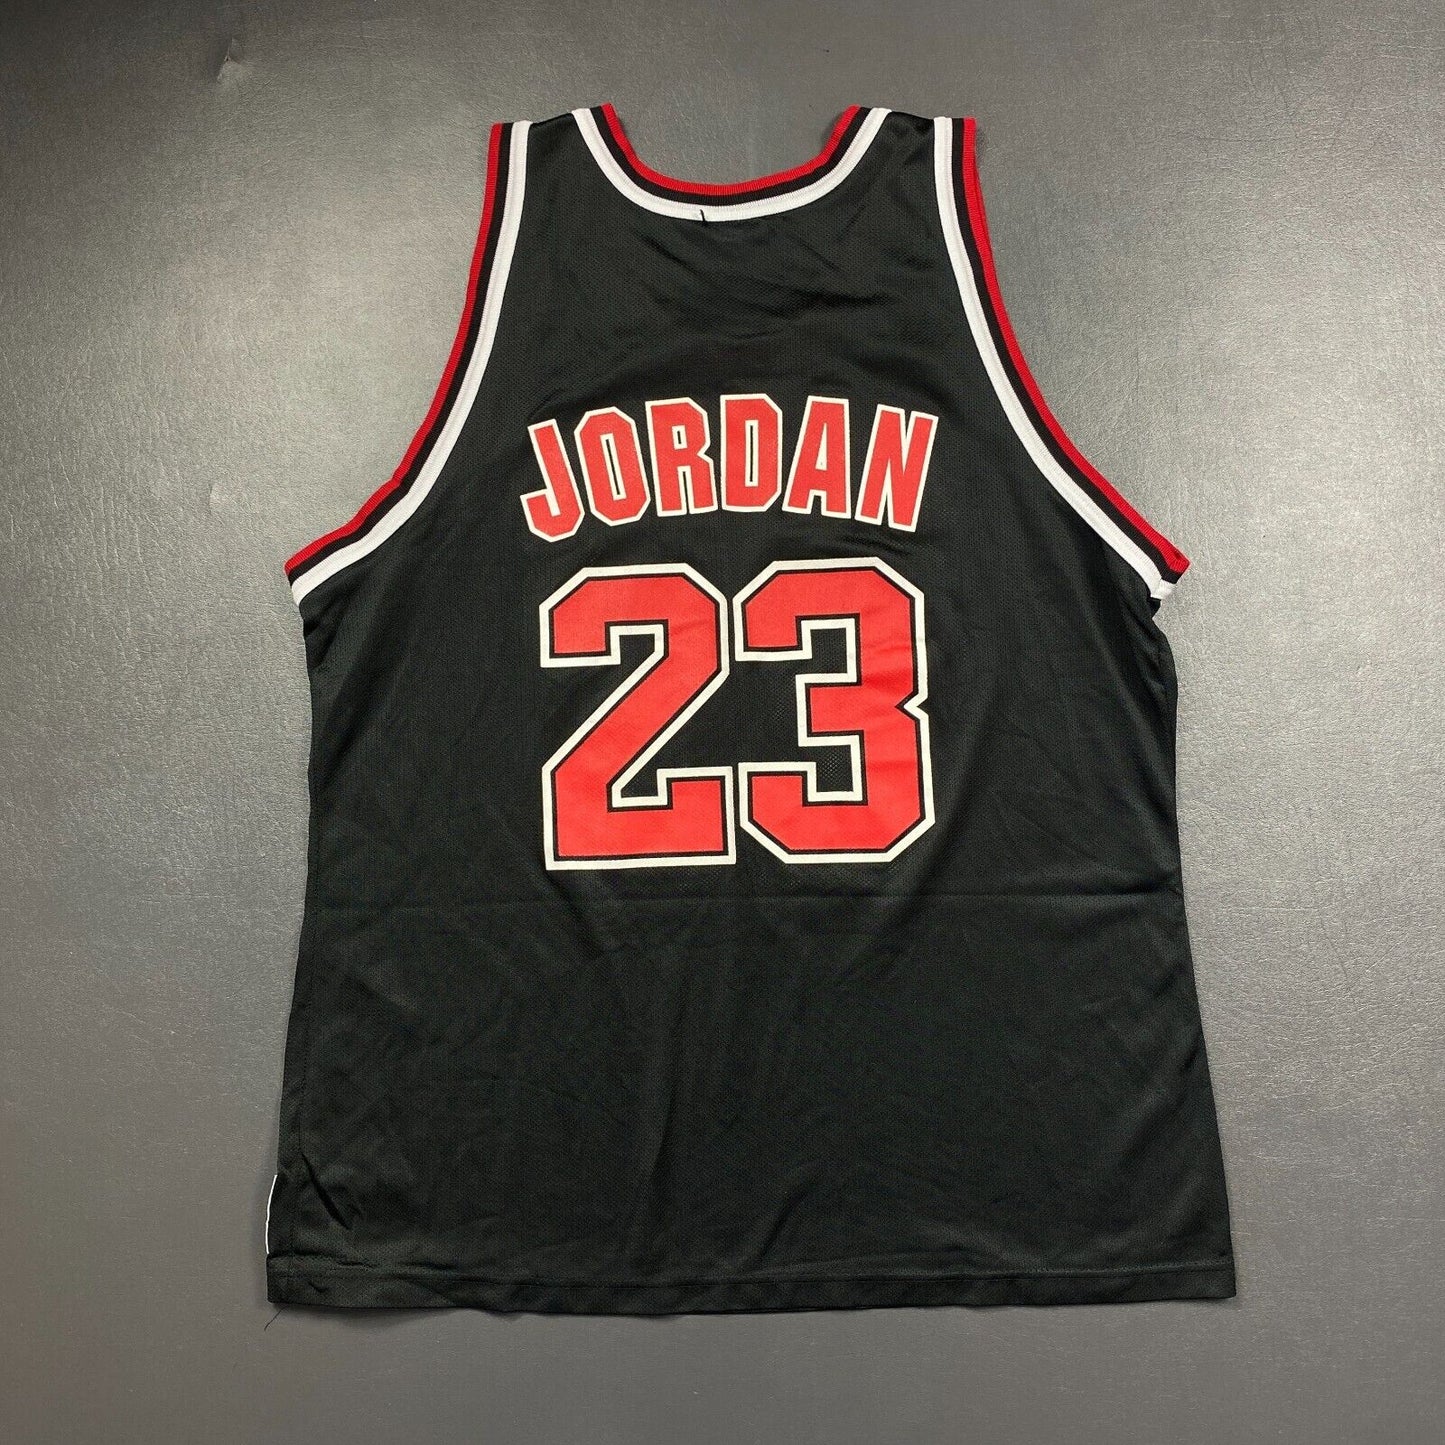 100% Authentic Michael Jordan Vintage Champion Bulls Jersey Size 48 L XL Mens